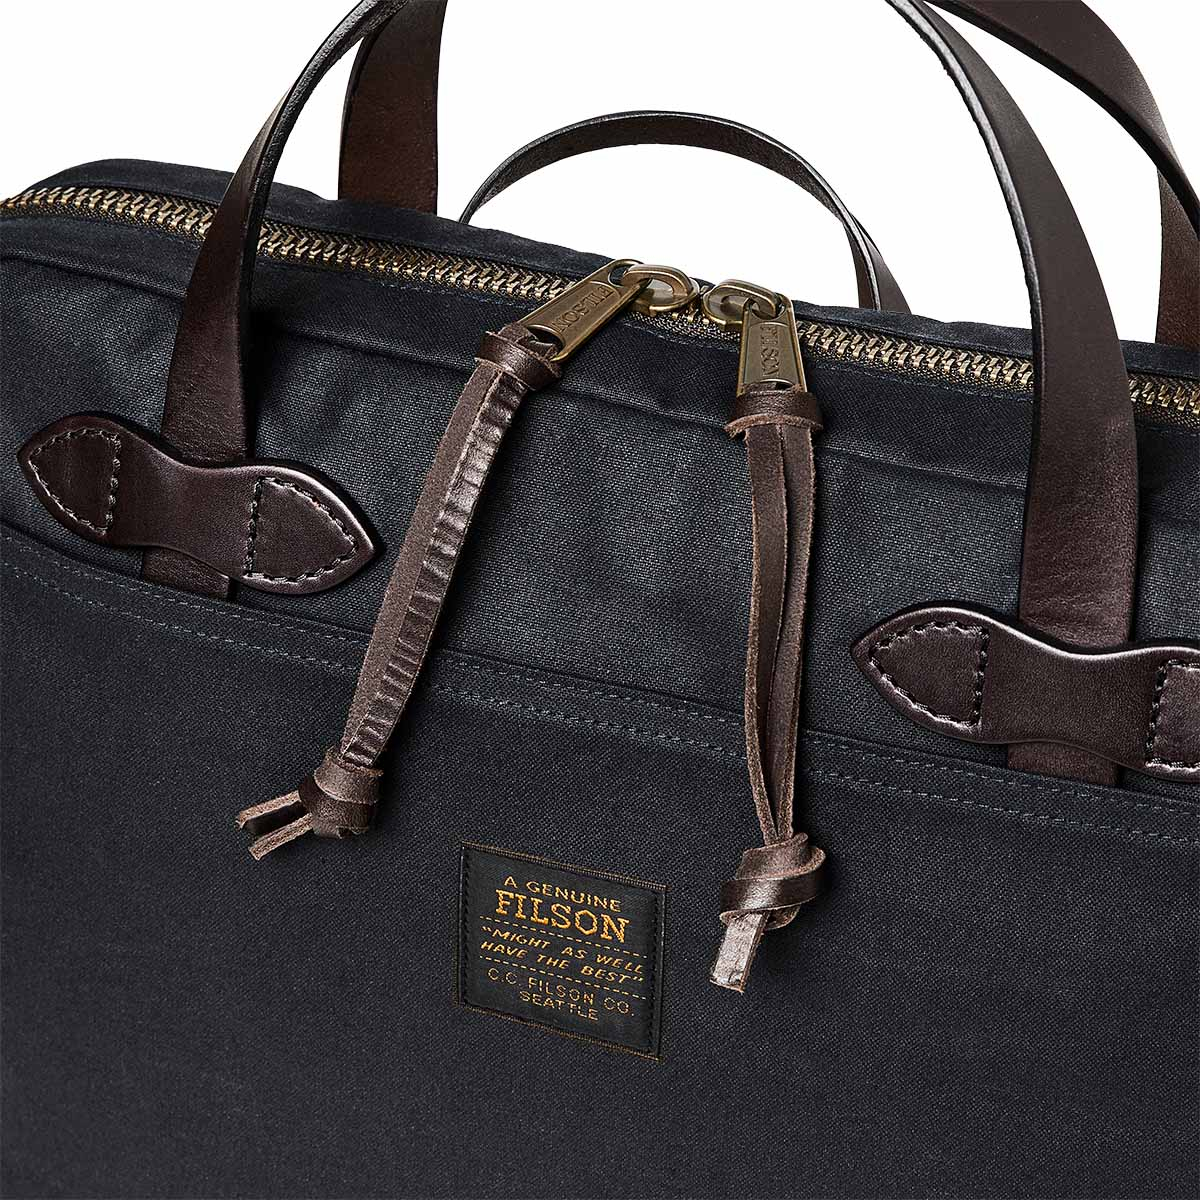 Filson Tin Cloth Compact Briefcase Navy, perfekte Tasche für den Weg ins Büro